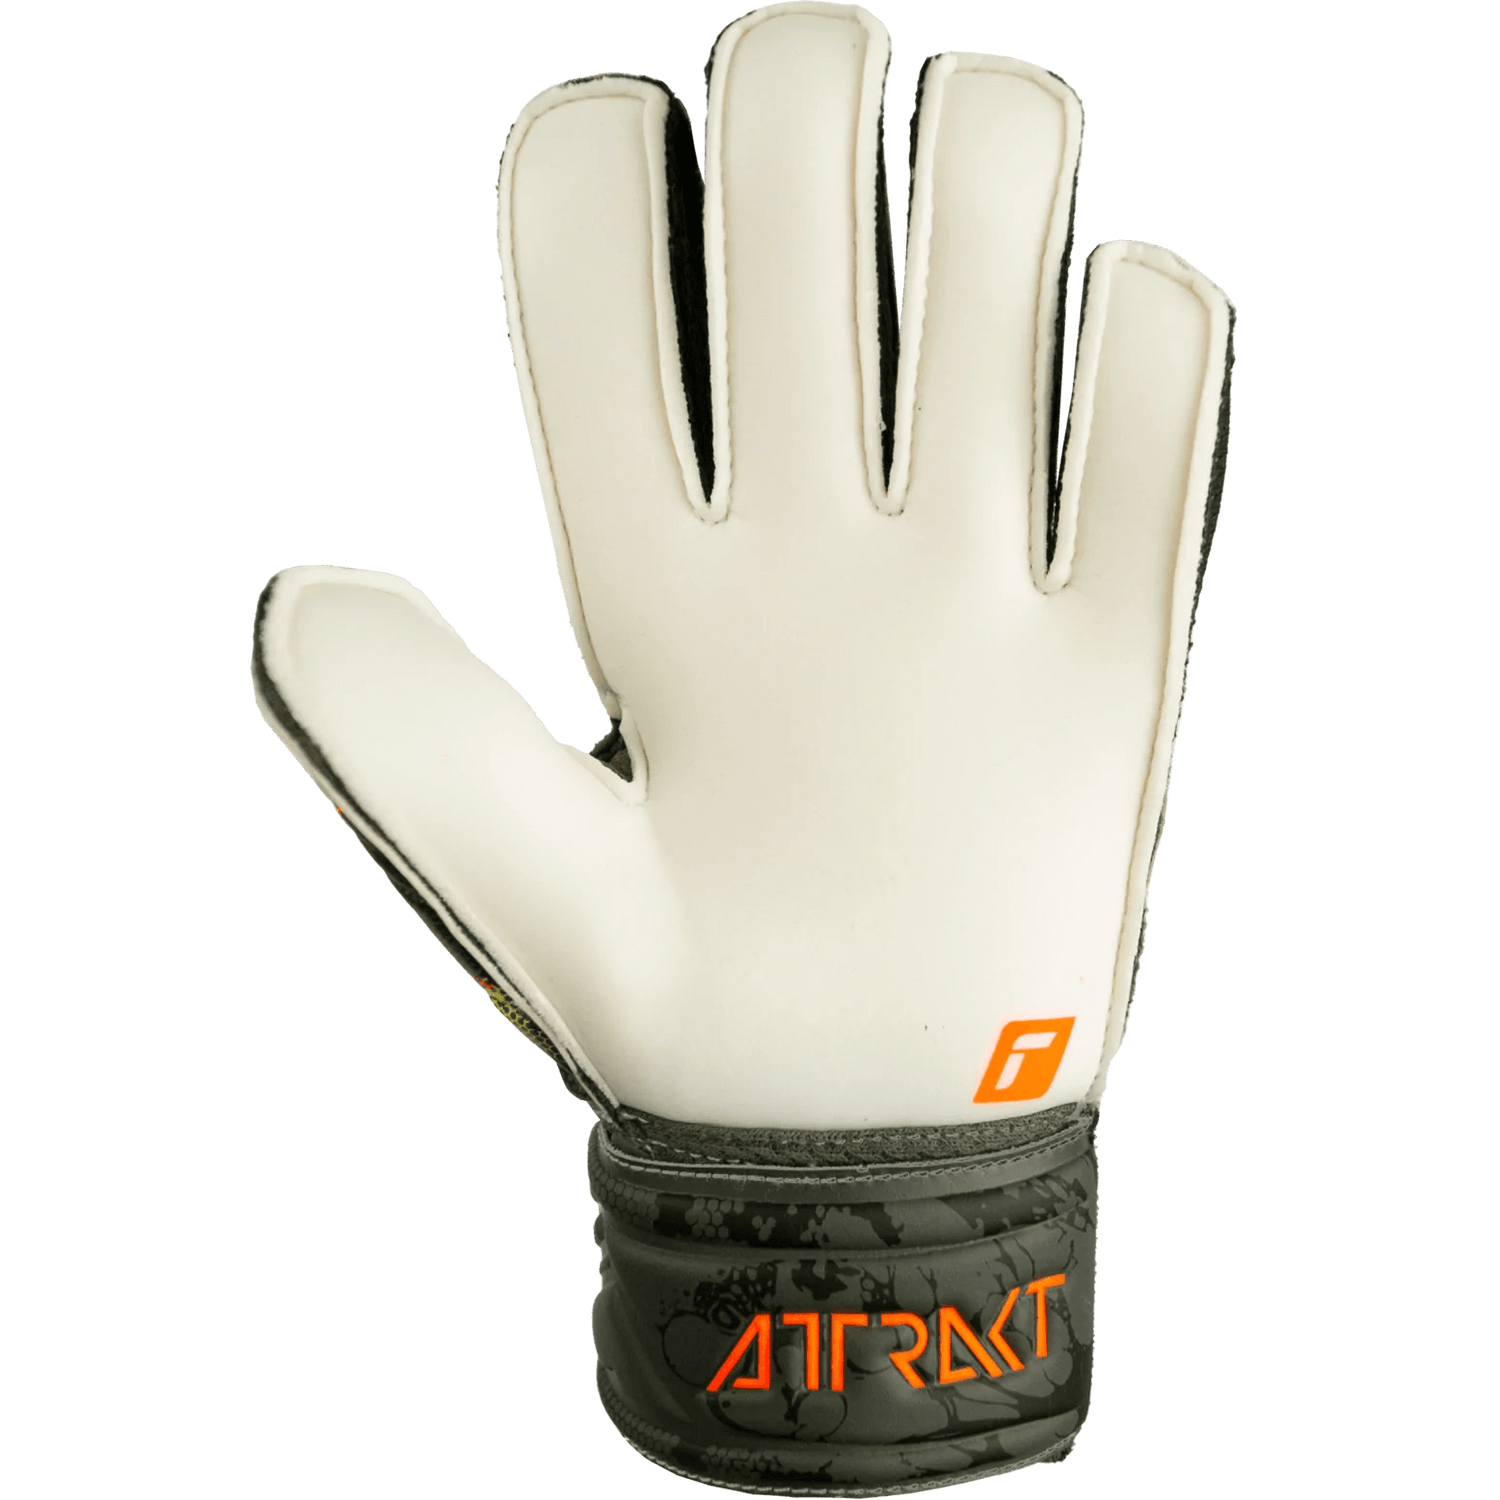 Reusch JR Attrakt Solid Finger Support Goalkeeper Gloves - Desert Green - Orange (Single - Inner)